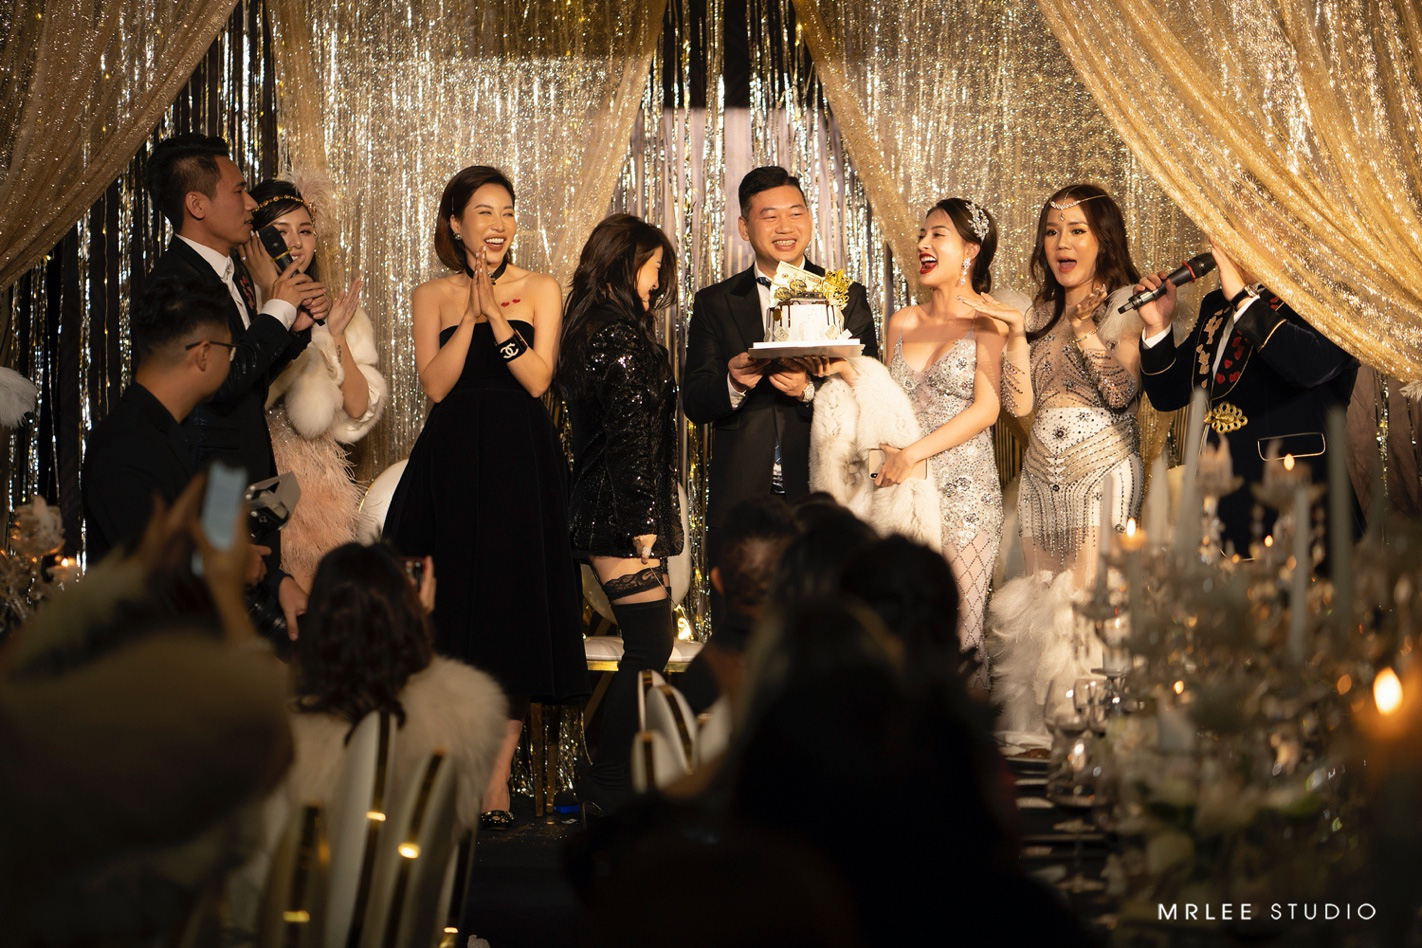 Buổi tiệc sang trọng theo phong cách Gatsby của giới doanh nhân Hà thành - Ảnh 7.